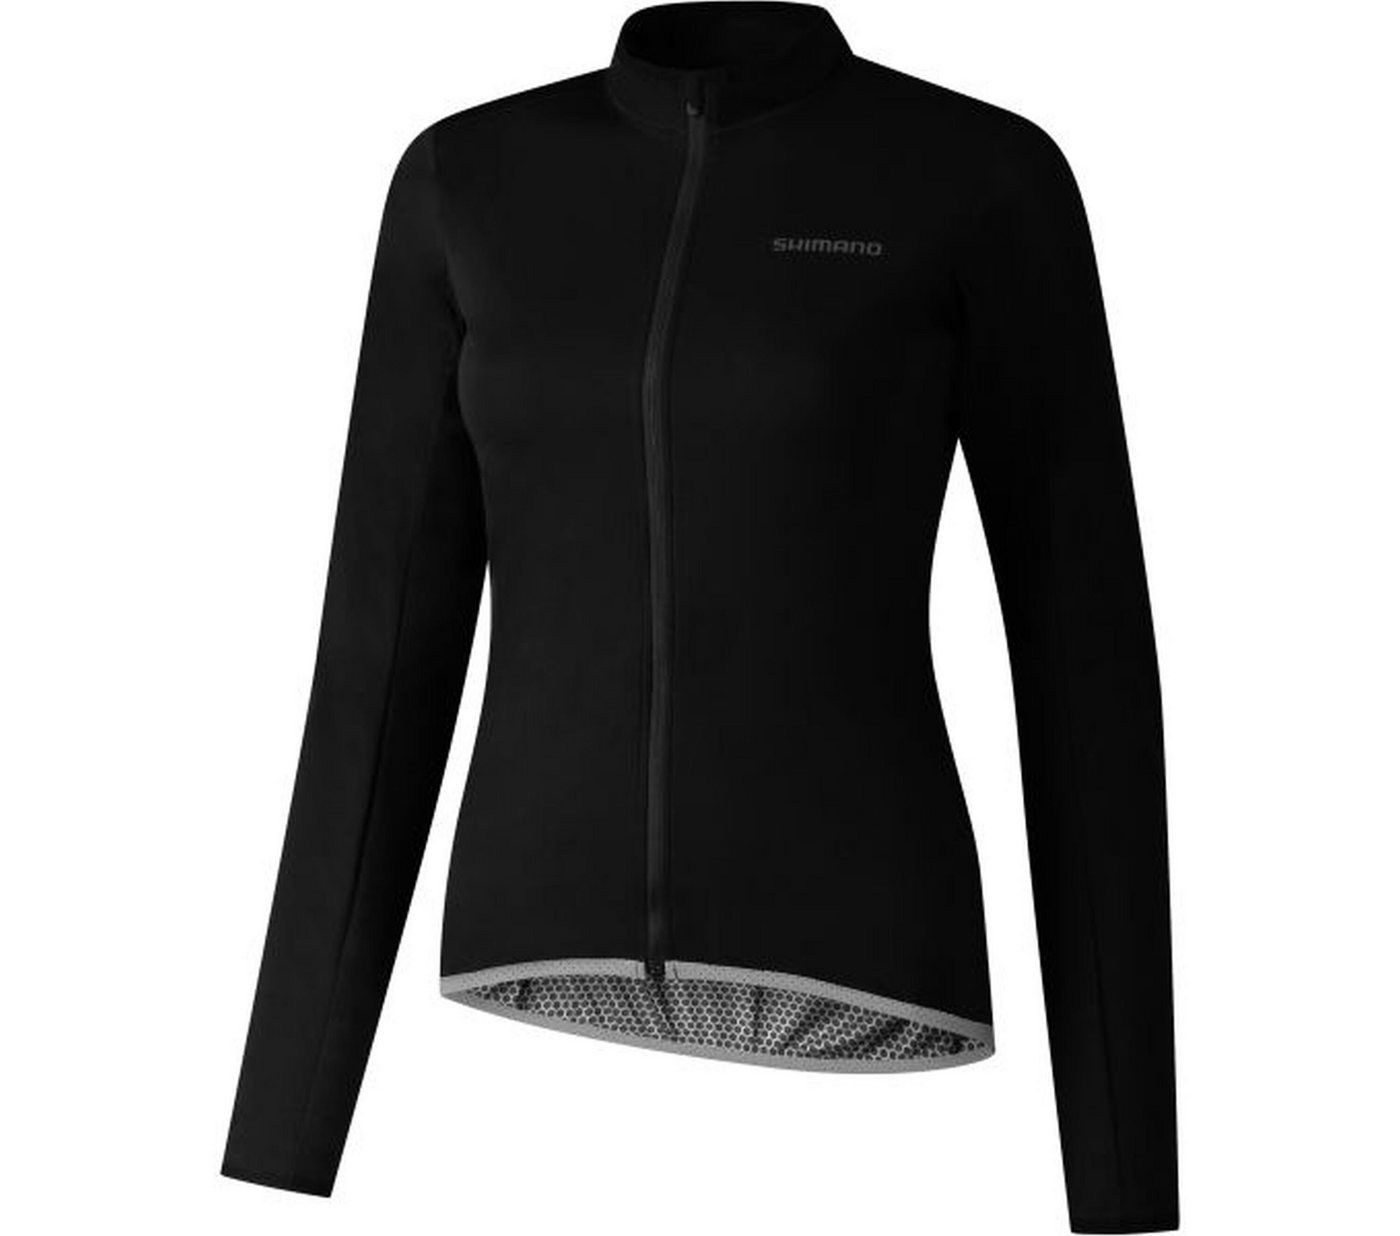 Shimano Fahrradjacke Woman's WINDFLEX Jacket von Shimano